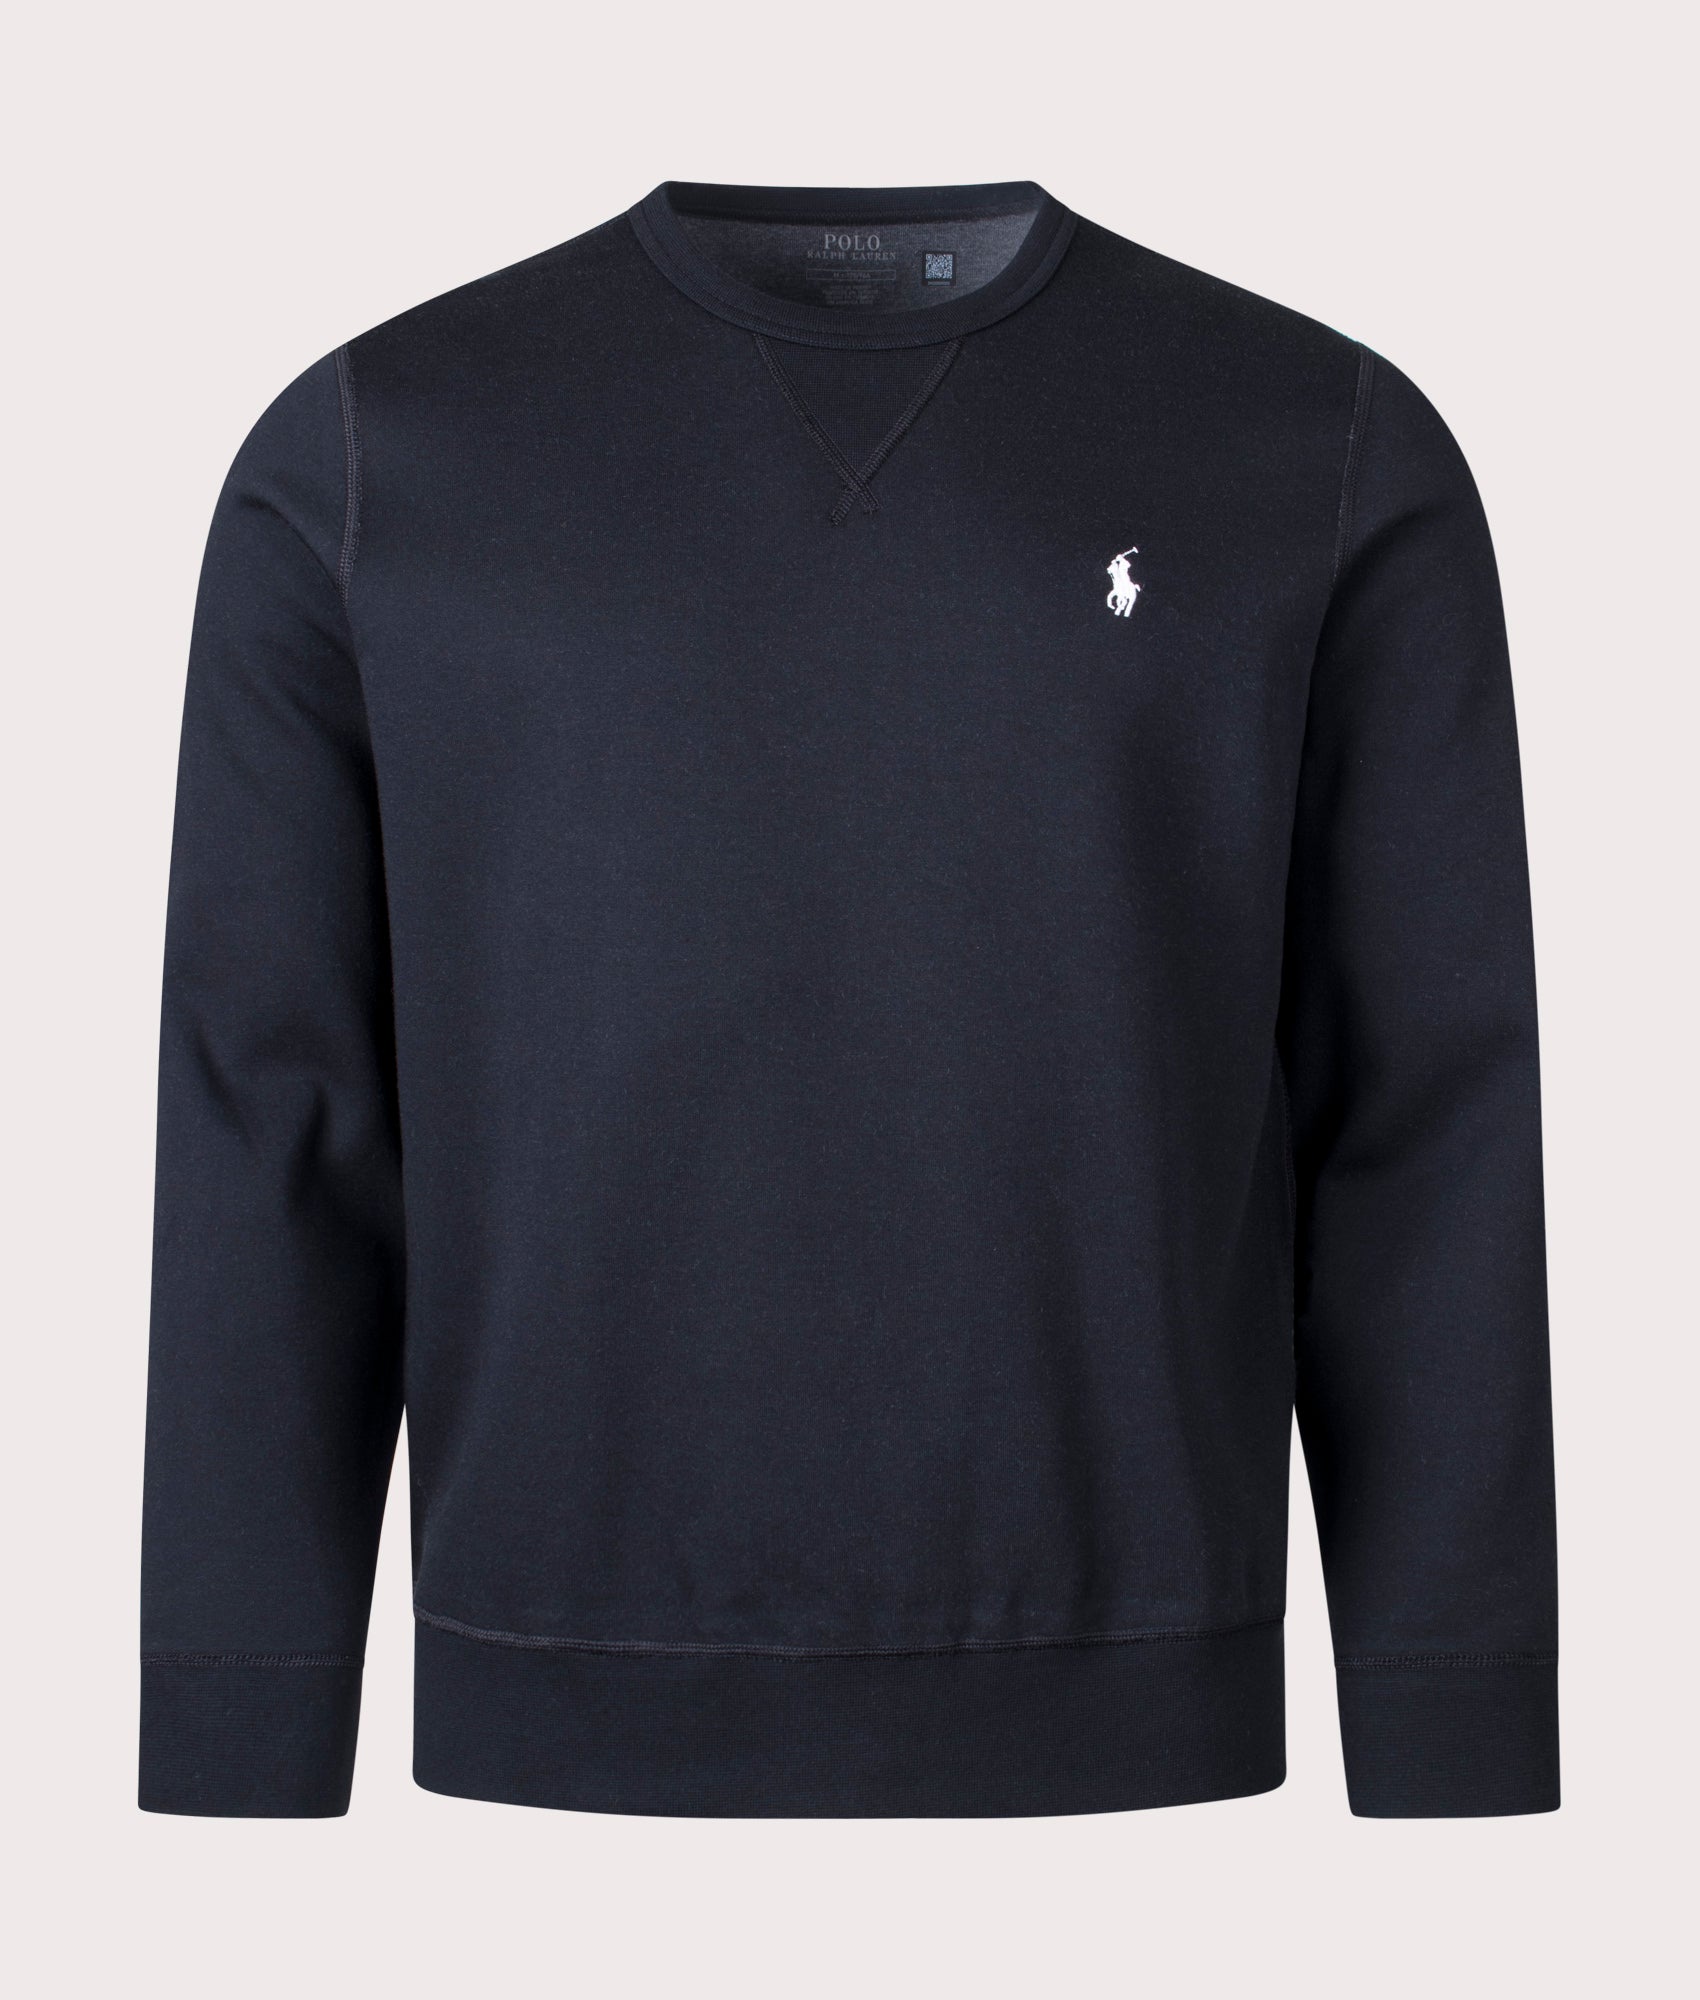 Polo Ralph Lauren Mens Double Knit Sweatshirt - Colour: 003 Polo Black/Cream PP - Size: XL